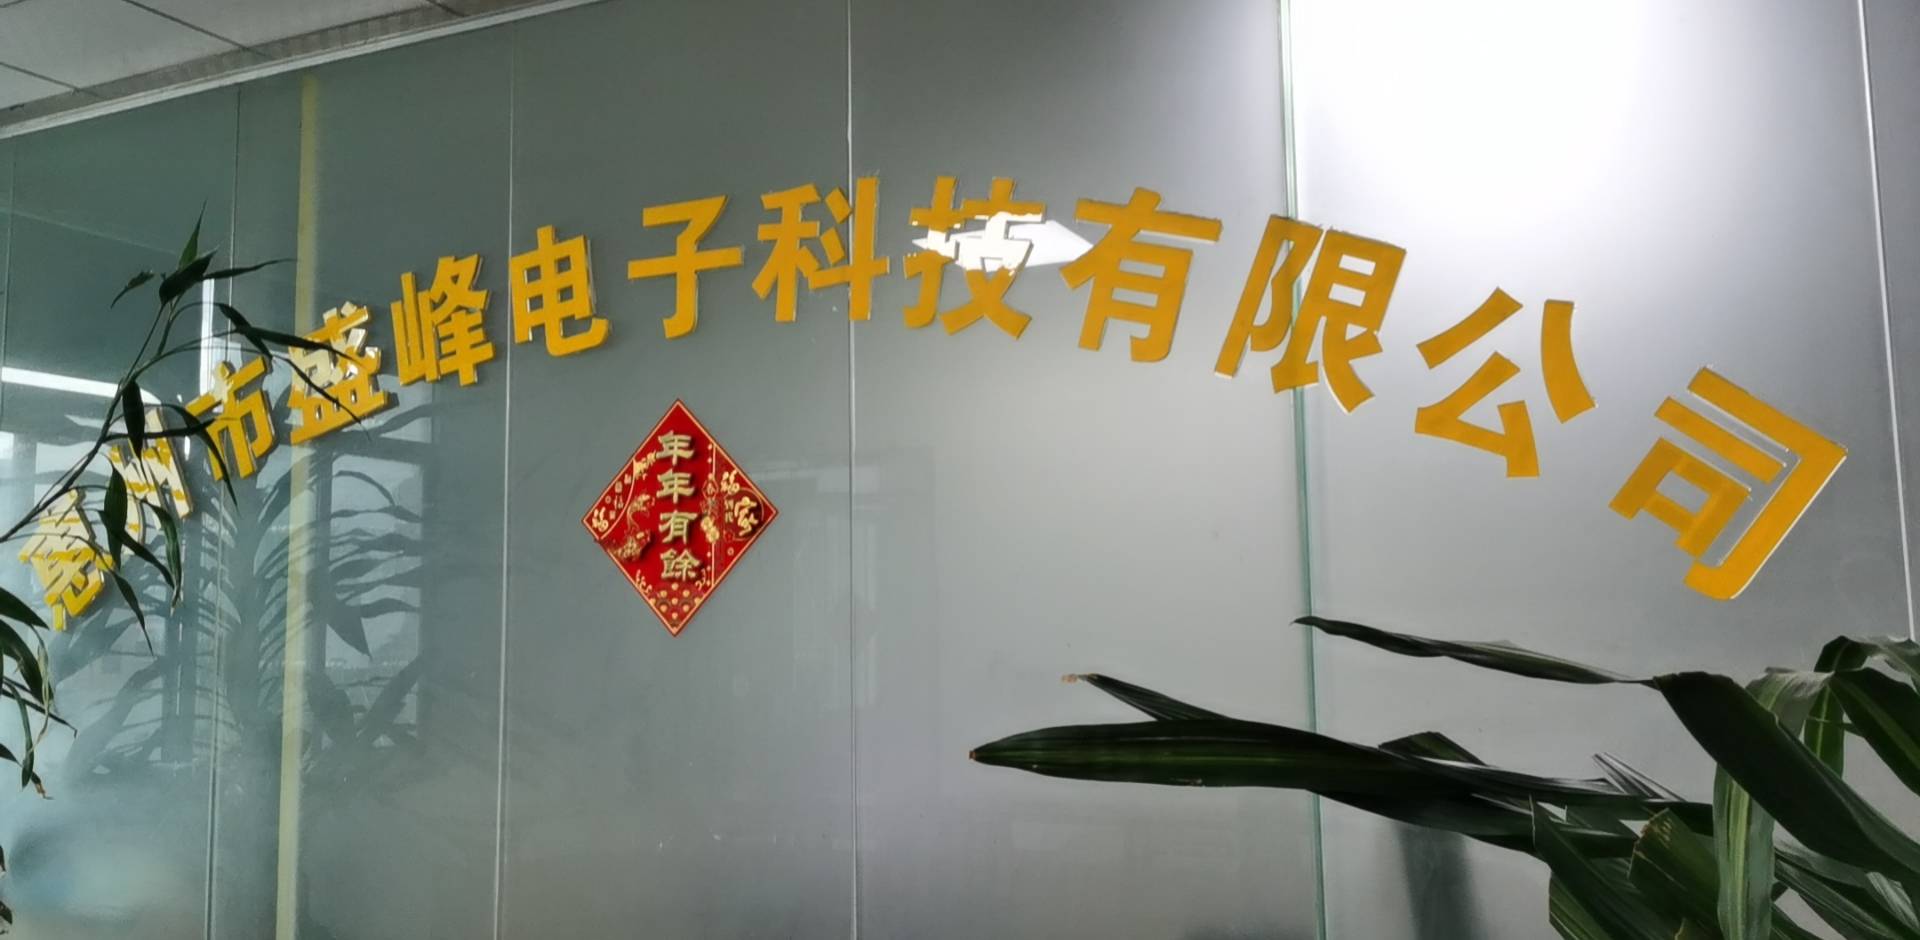 惠州市盛峰电子科技有限公司